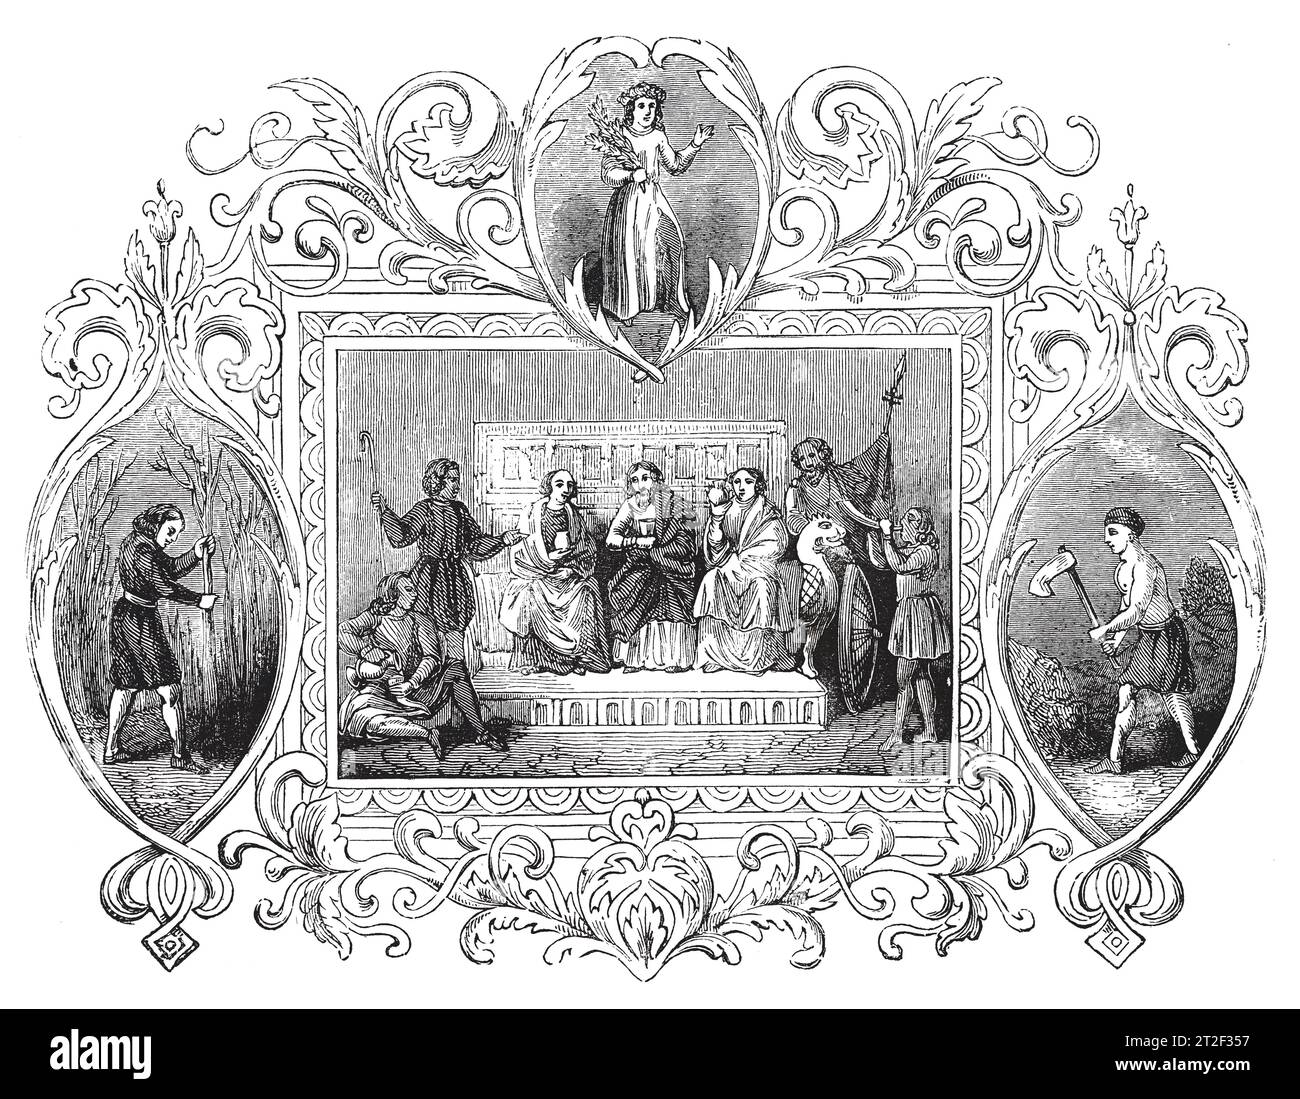 Emblemas sajones del mes de abril. Ilustración en blanco y negro de la 'Vieja Inglaterra' publicada por James Sangster en 1860. Foto de stock